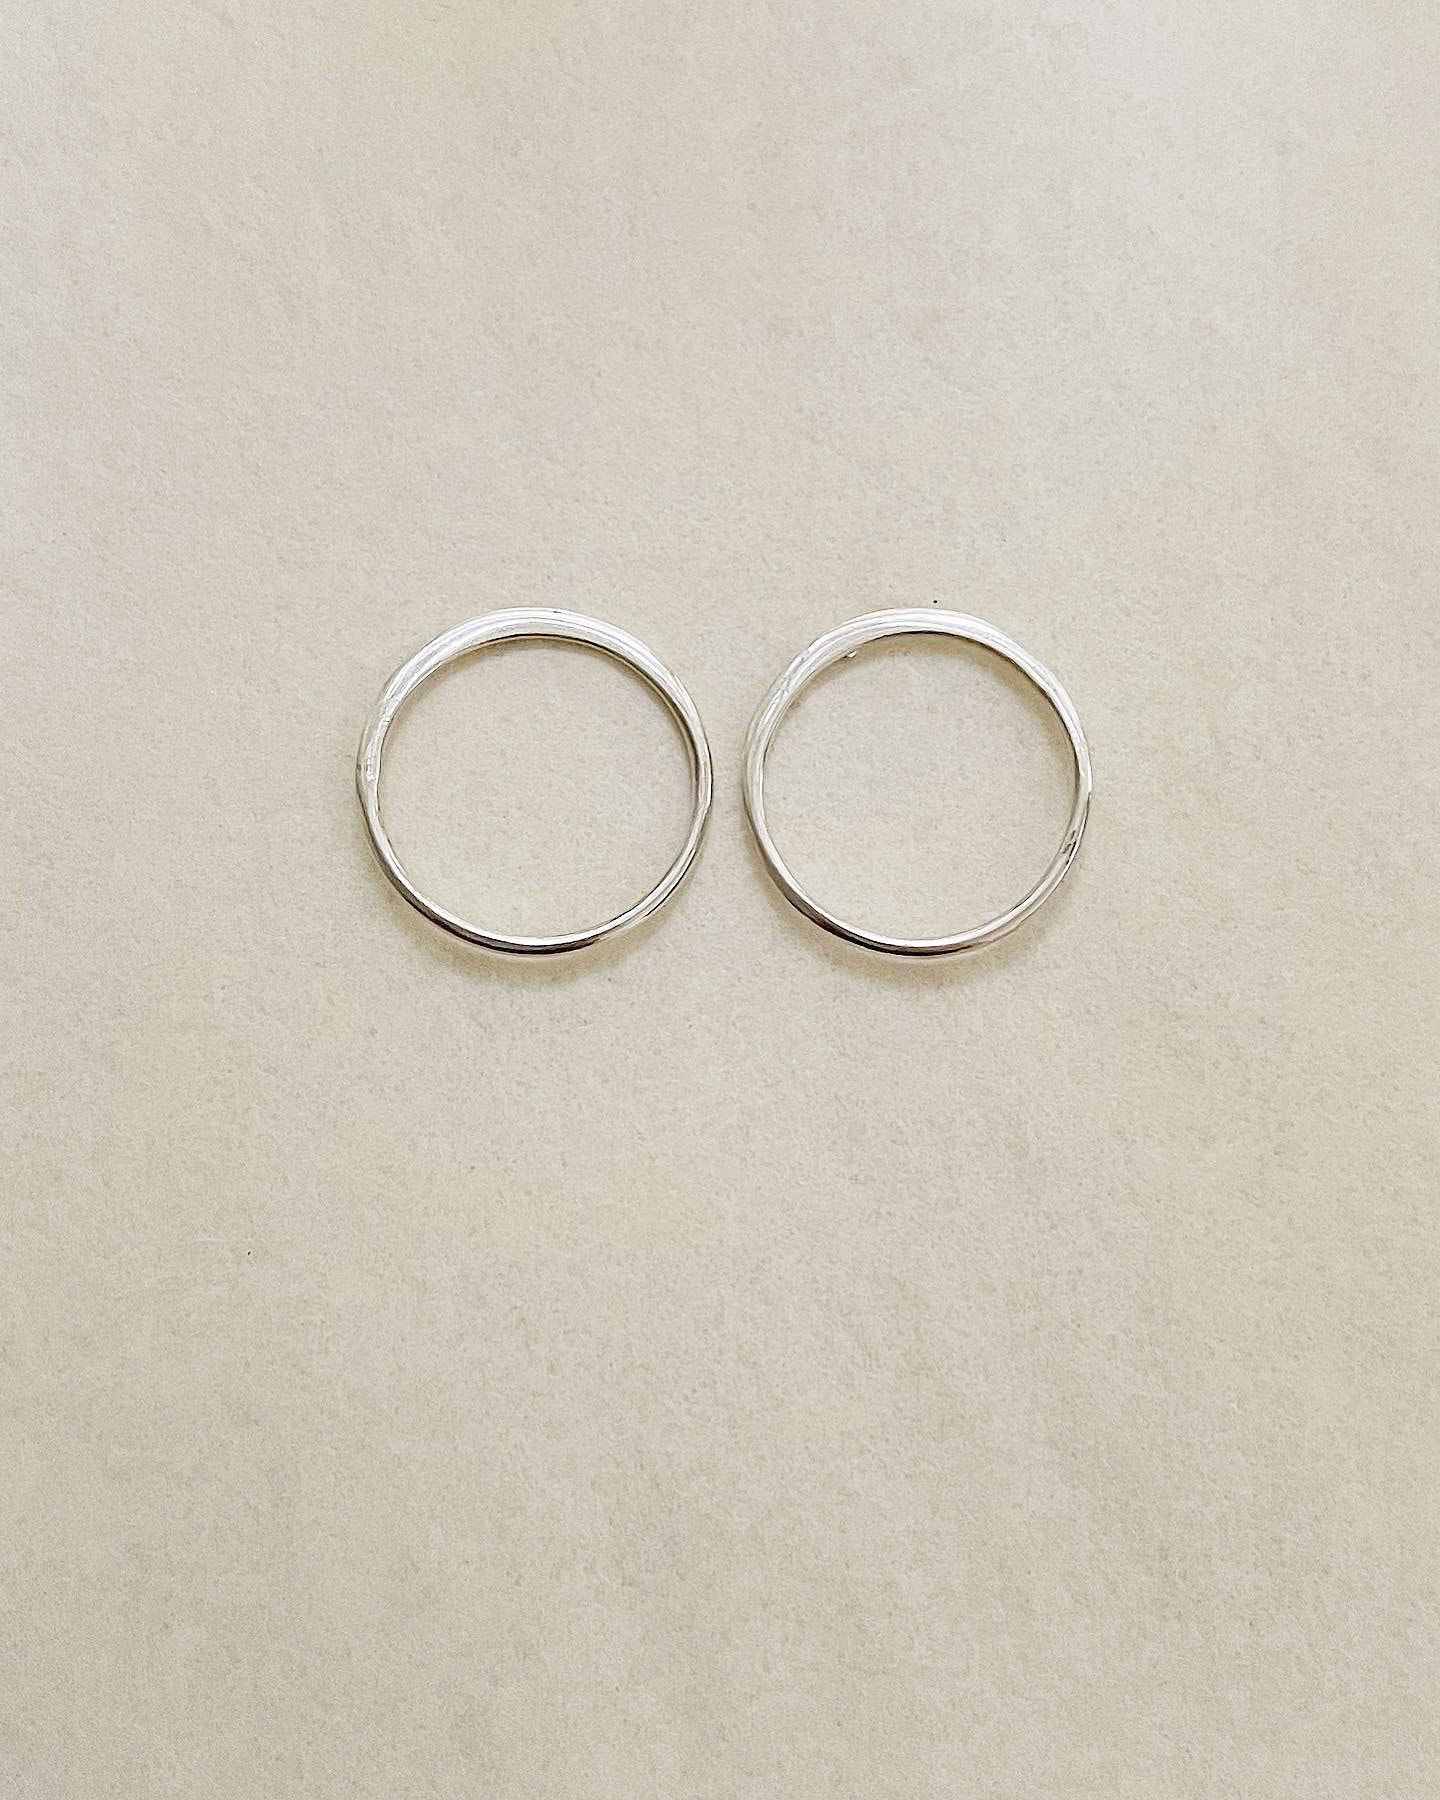 Flat Ring Stud Earrings Sterling Silver | Aquinnah Jewelry ...